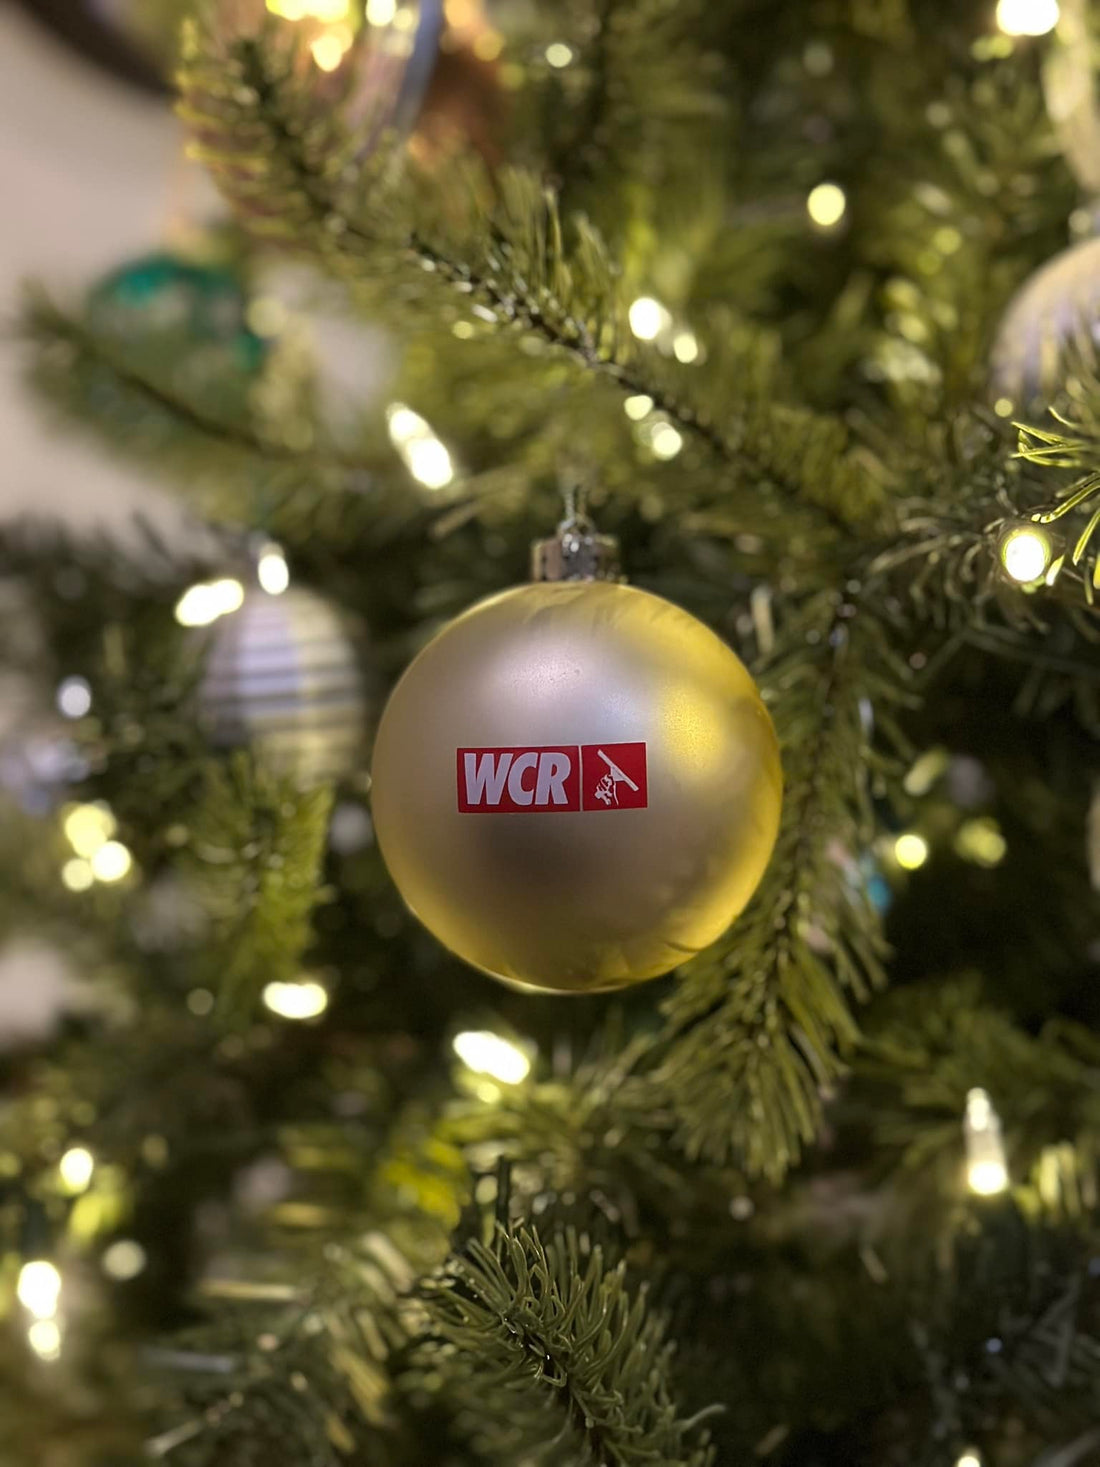 WCR Christmas Ornament on Christmas Tree with Lights